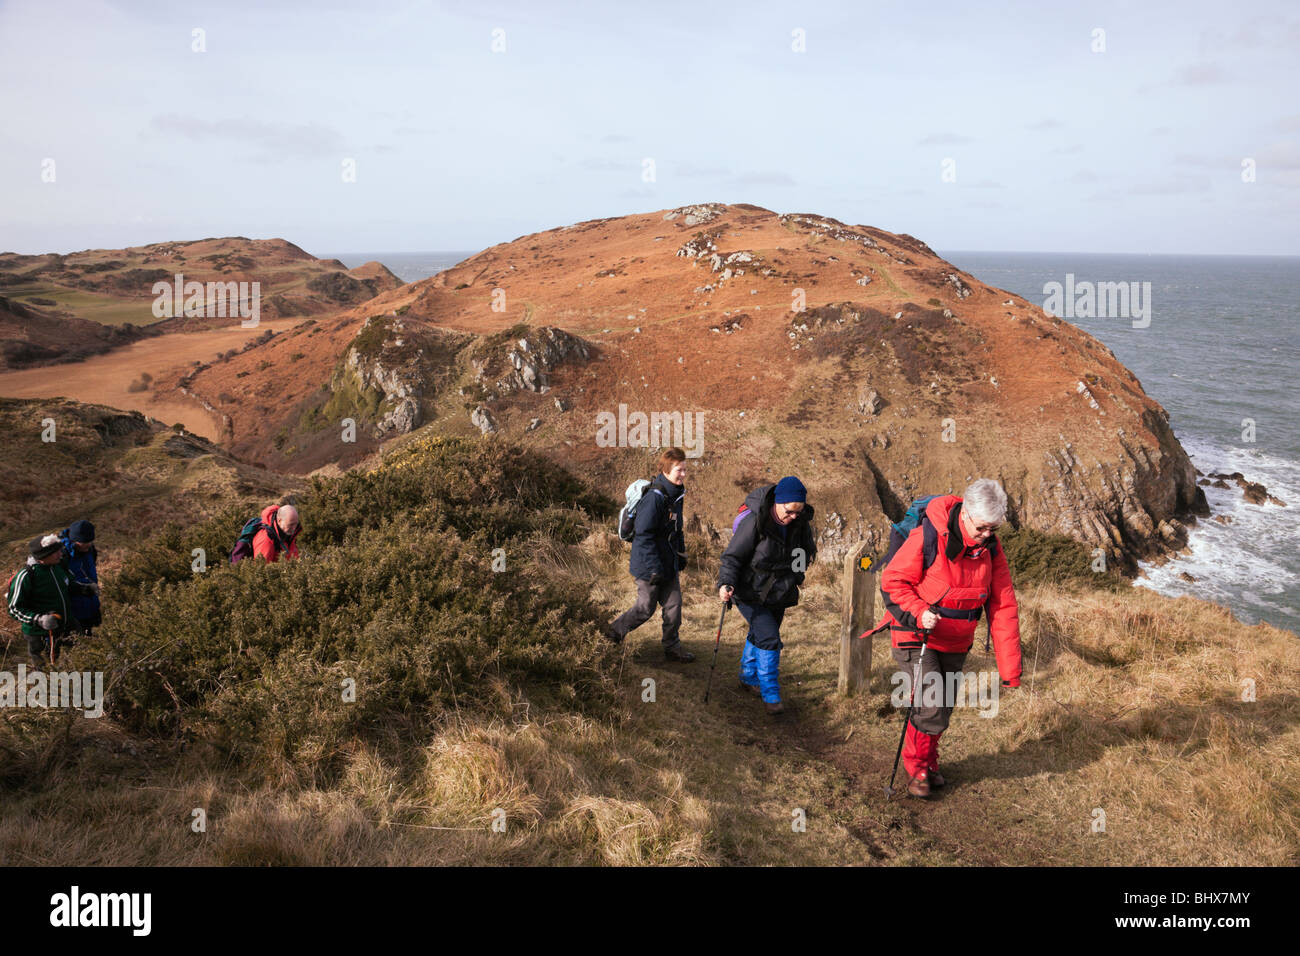 Les promeneurs marchant sur l'île d'Anglesey sentier littoral au-dessus de Porth, Cynfor. Cemaes, Isle of Anglesey, au nord du Pays de Galles, Royaume-Uni. Banque D'Images